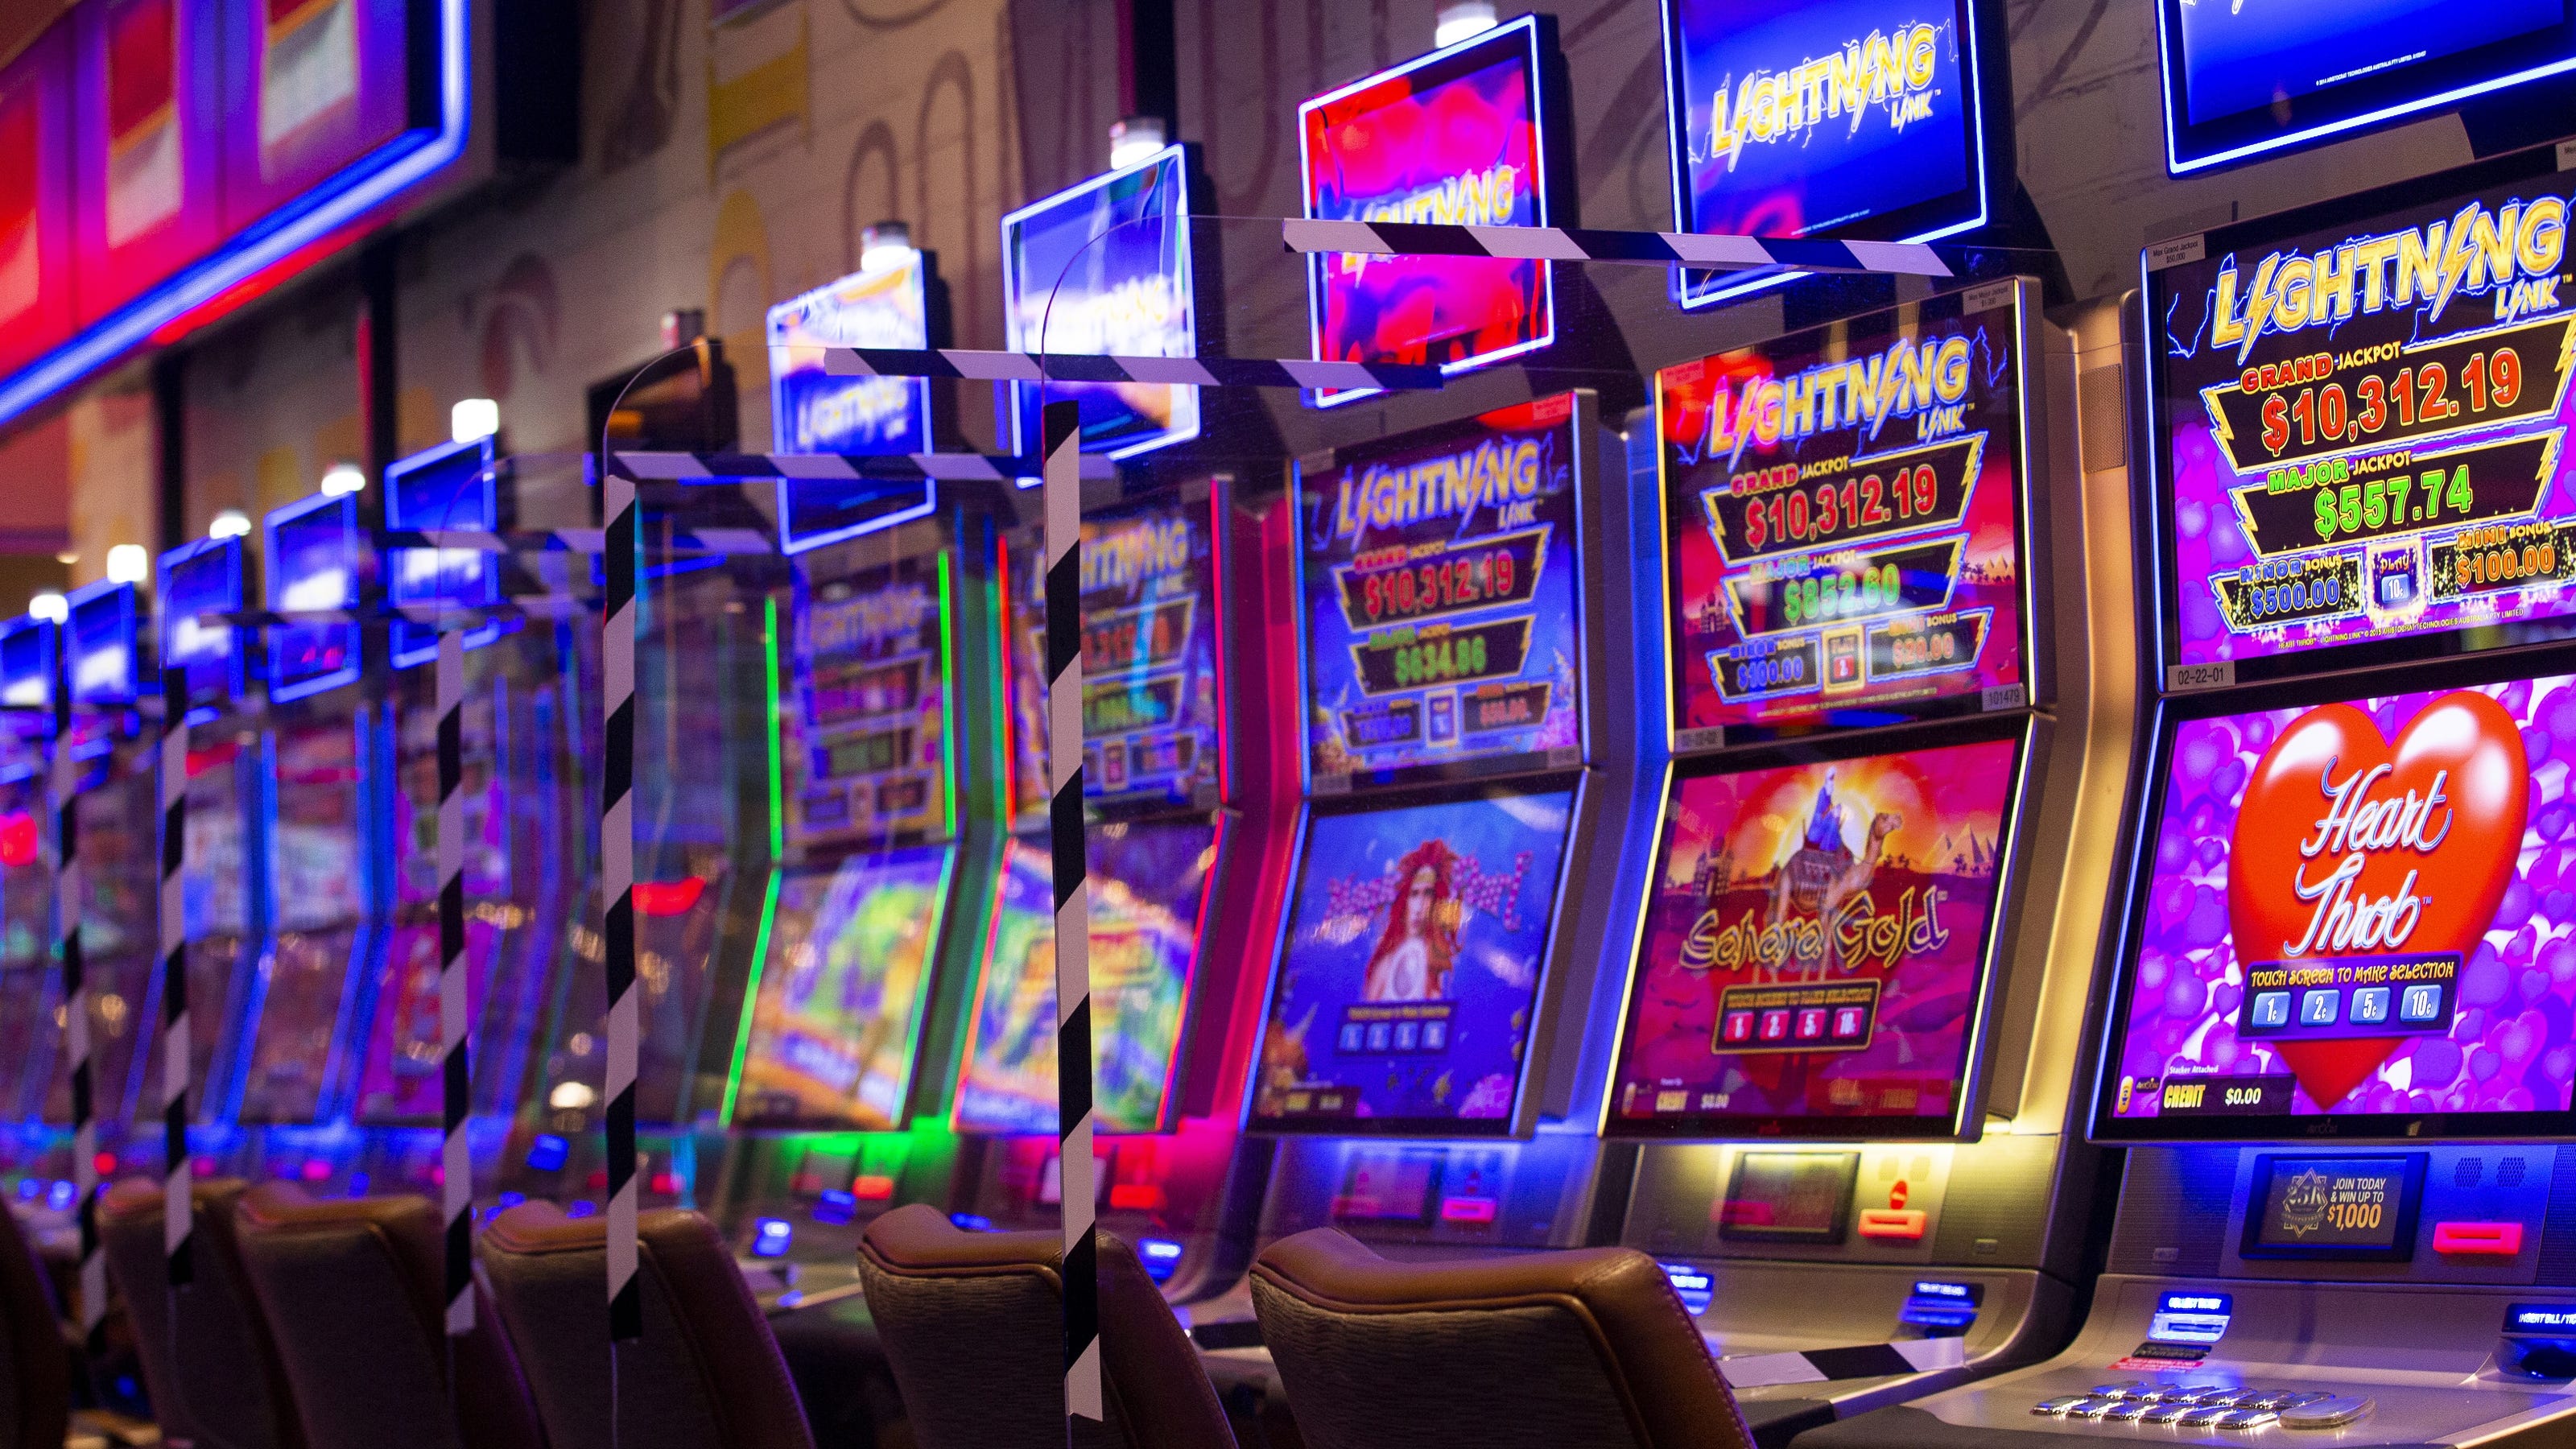 Gila River Hotels Casinos reopening May 15 at 50% capacity